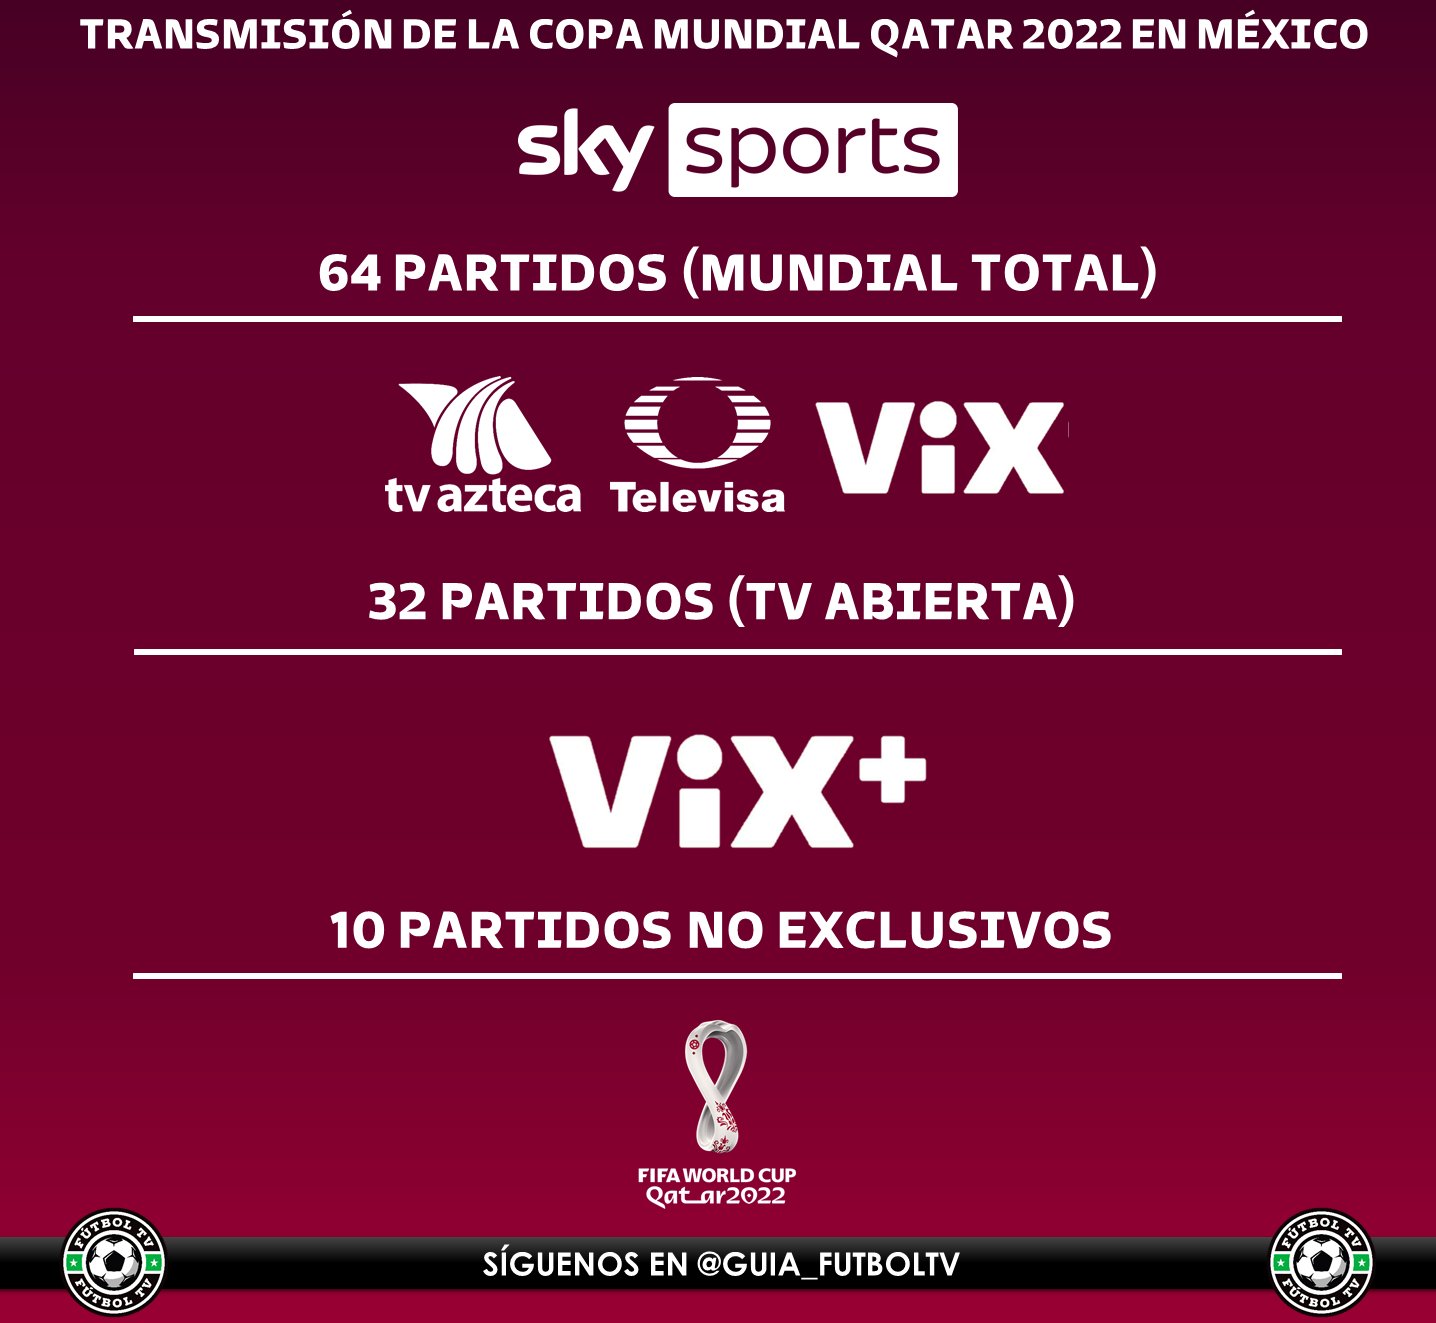 Fútbol TV Twitter: "SKY confirmo la de todos los partidos de Qatar 2022 y en televisión abierta tendremos 32 partidos, les la cantidad de partidos que transmitirá cada cadena